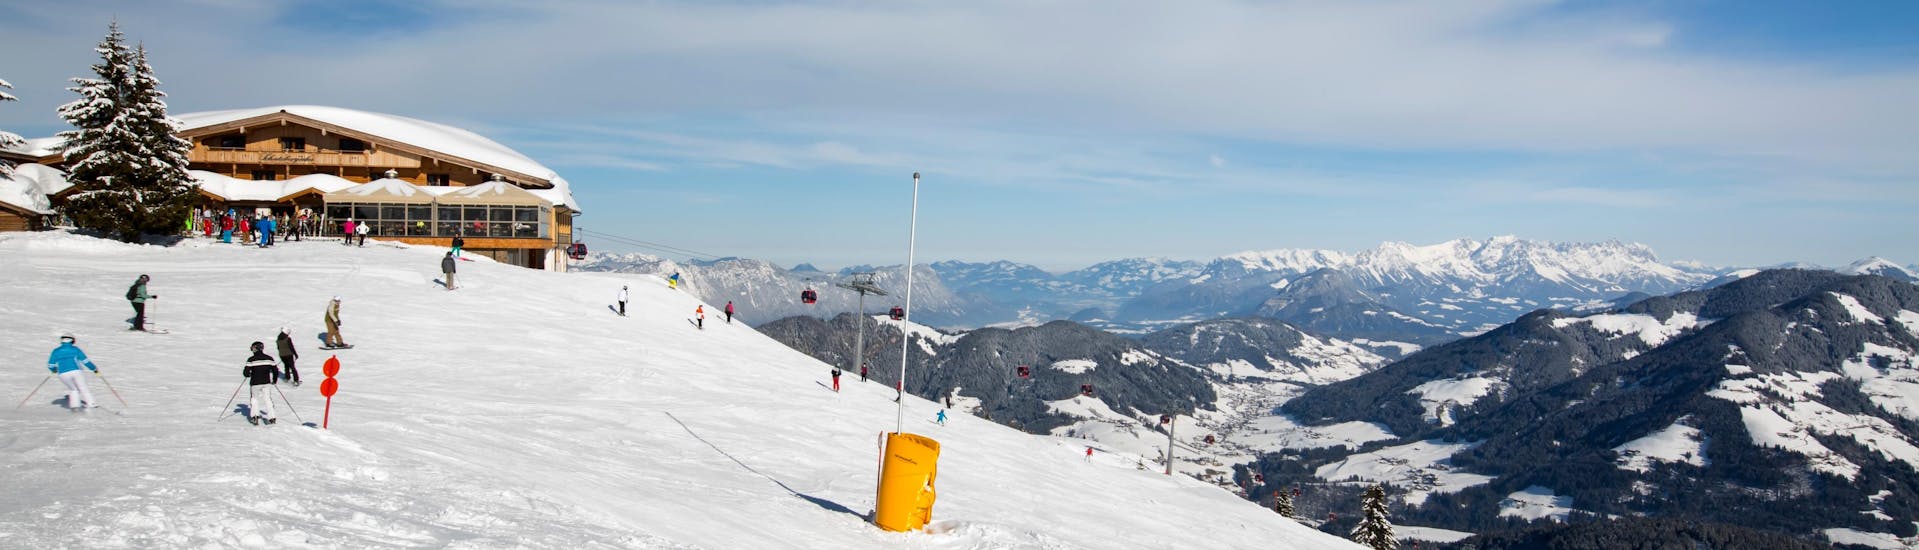 Blick auf die Gondeln beim Skikurs mit Skischulen in Niederau.